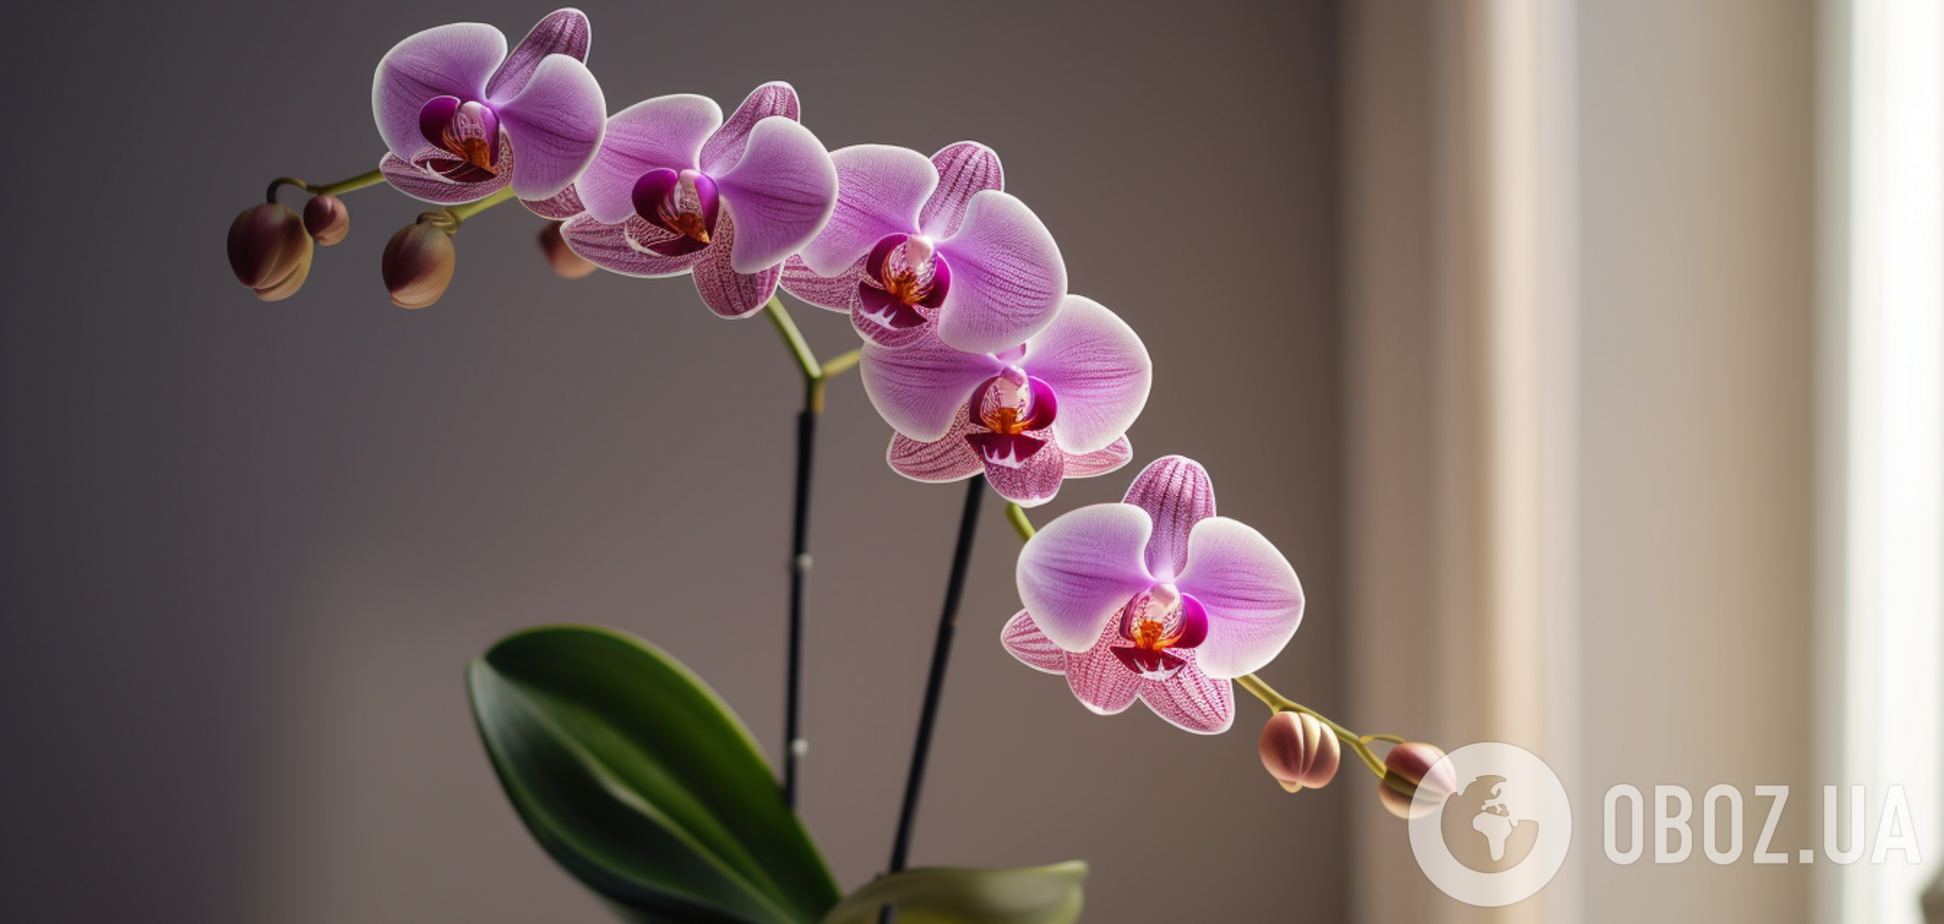 Чим підживити орхідею, аби вона зацвіла: два нехитрих методи